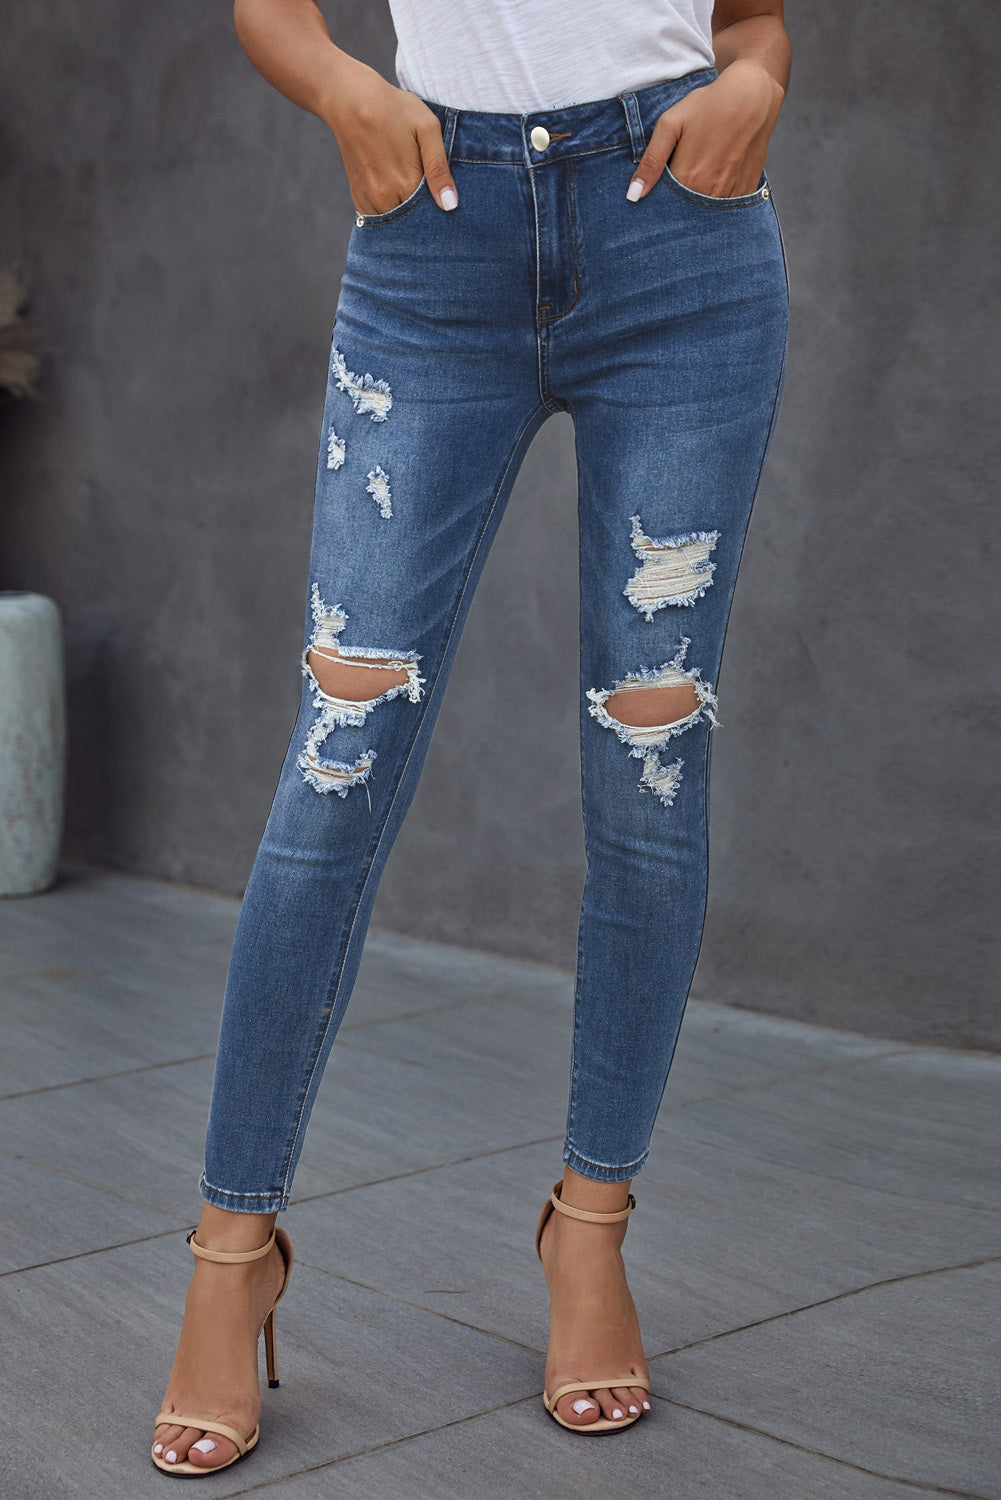 Vintage Skinny Ripped Jeans - DromedarShop.com Online Boutique